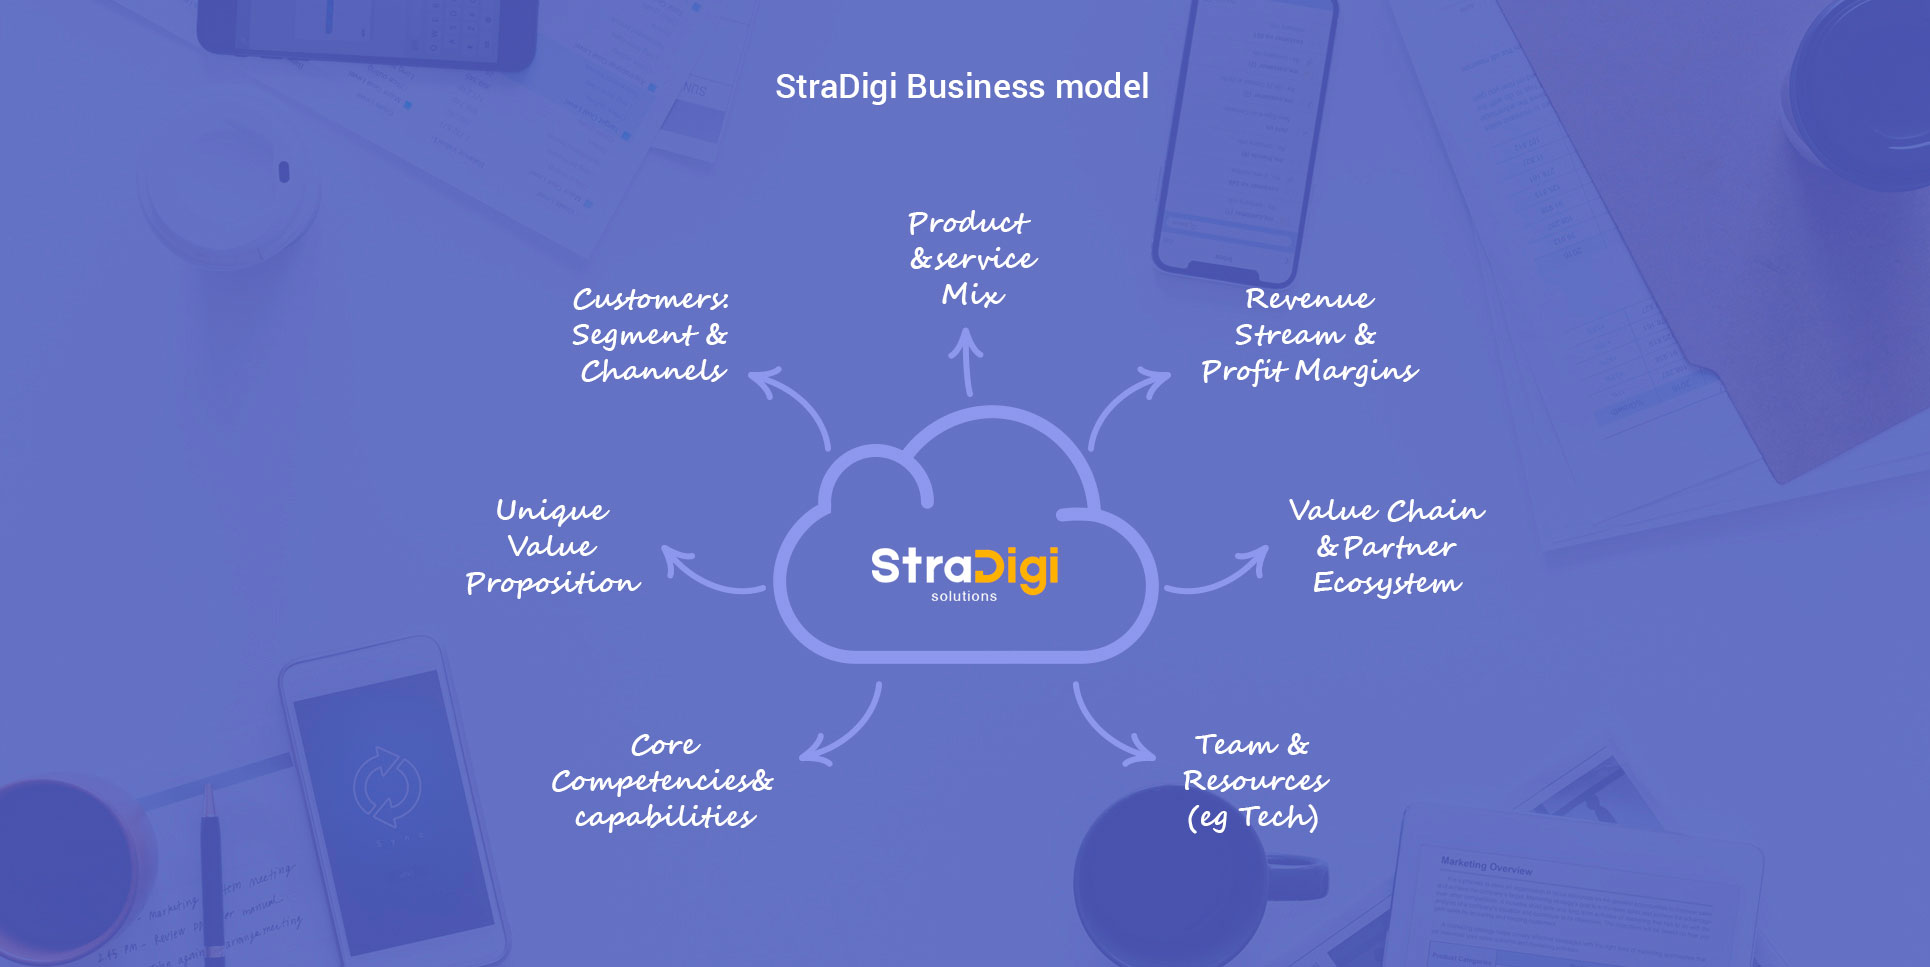 StraDigi-Tools-and-Methodologies